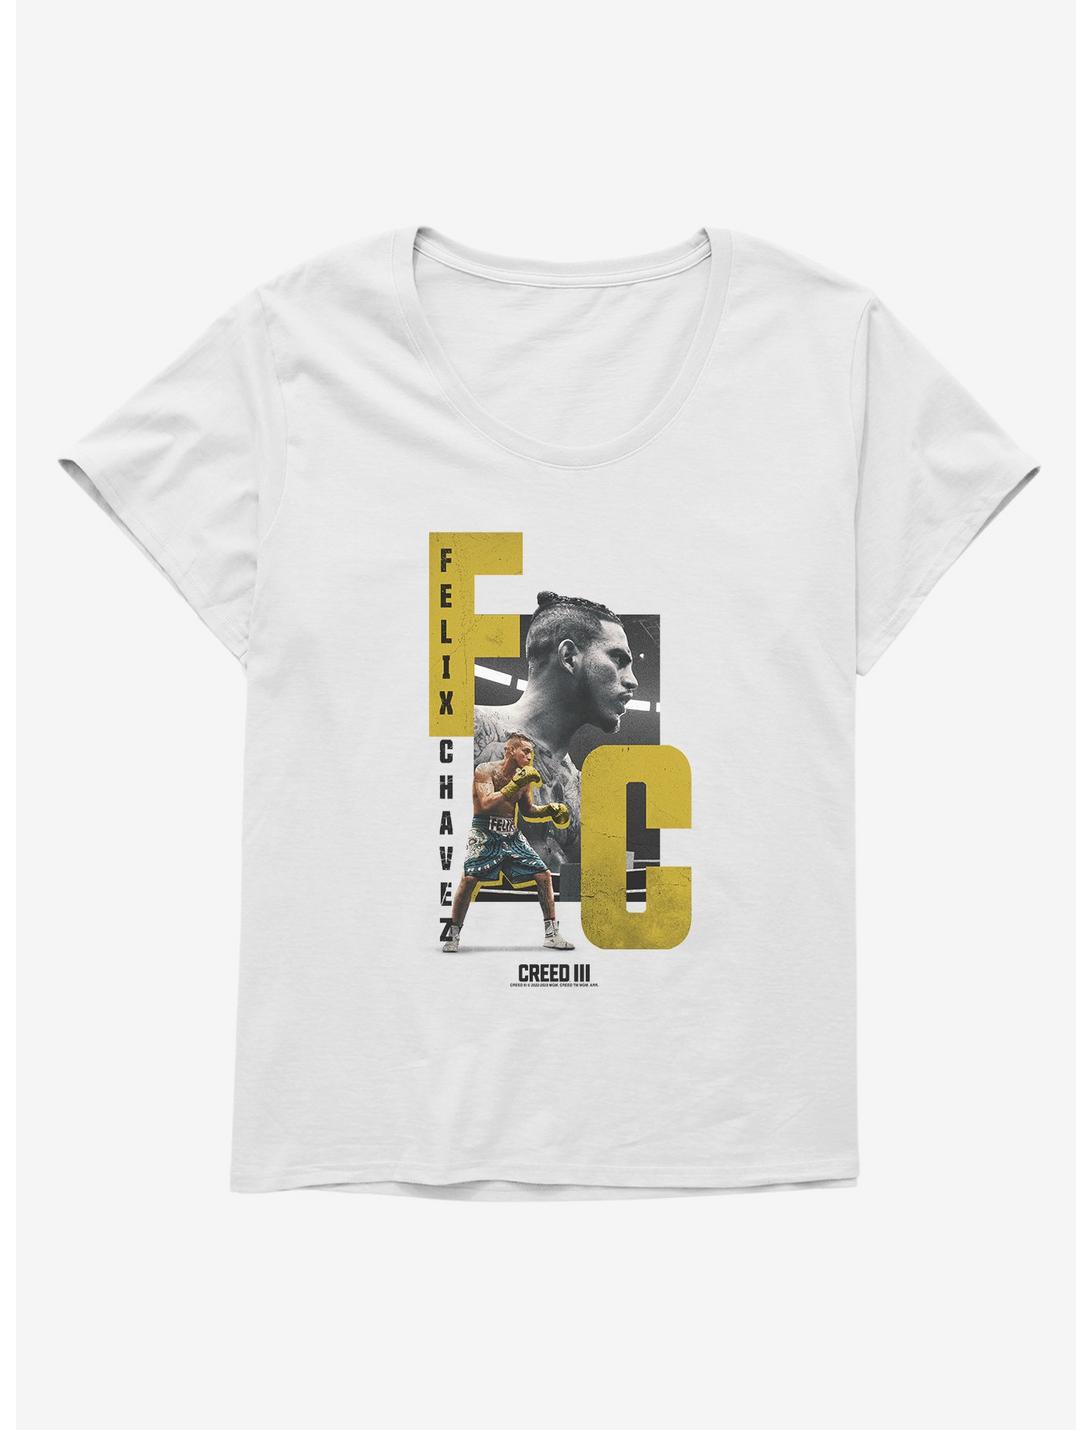 Creed III Felix Chavez Portrait Womens T-Shirt Plus Size, WHITE, hi-res